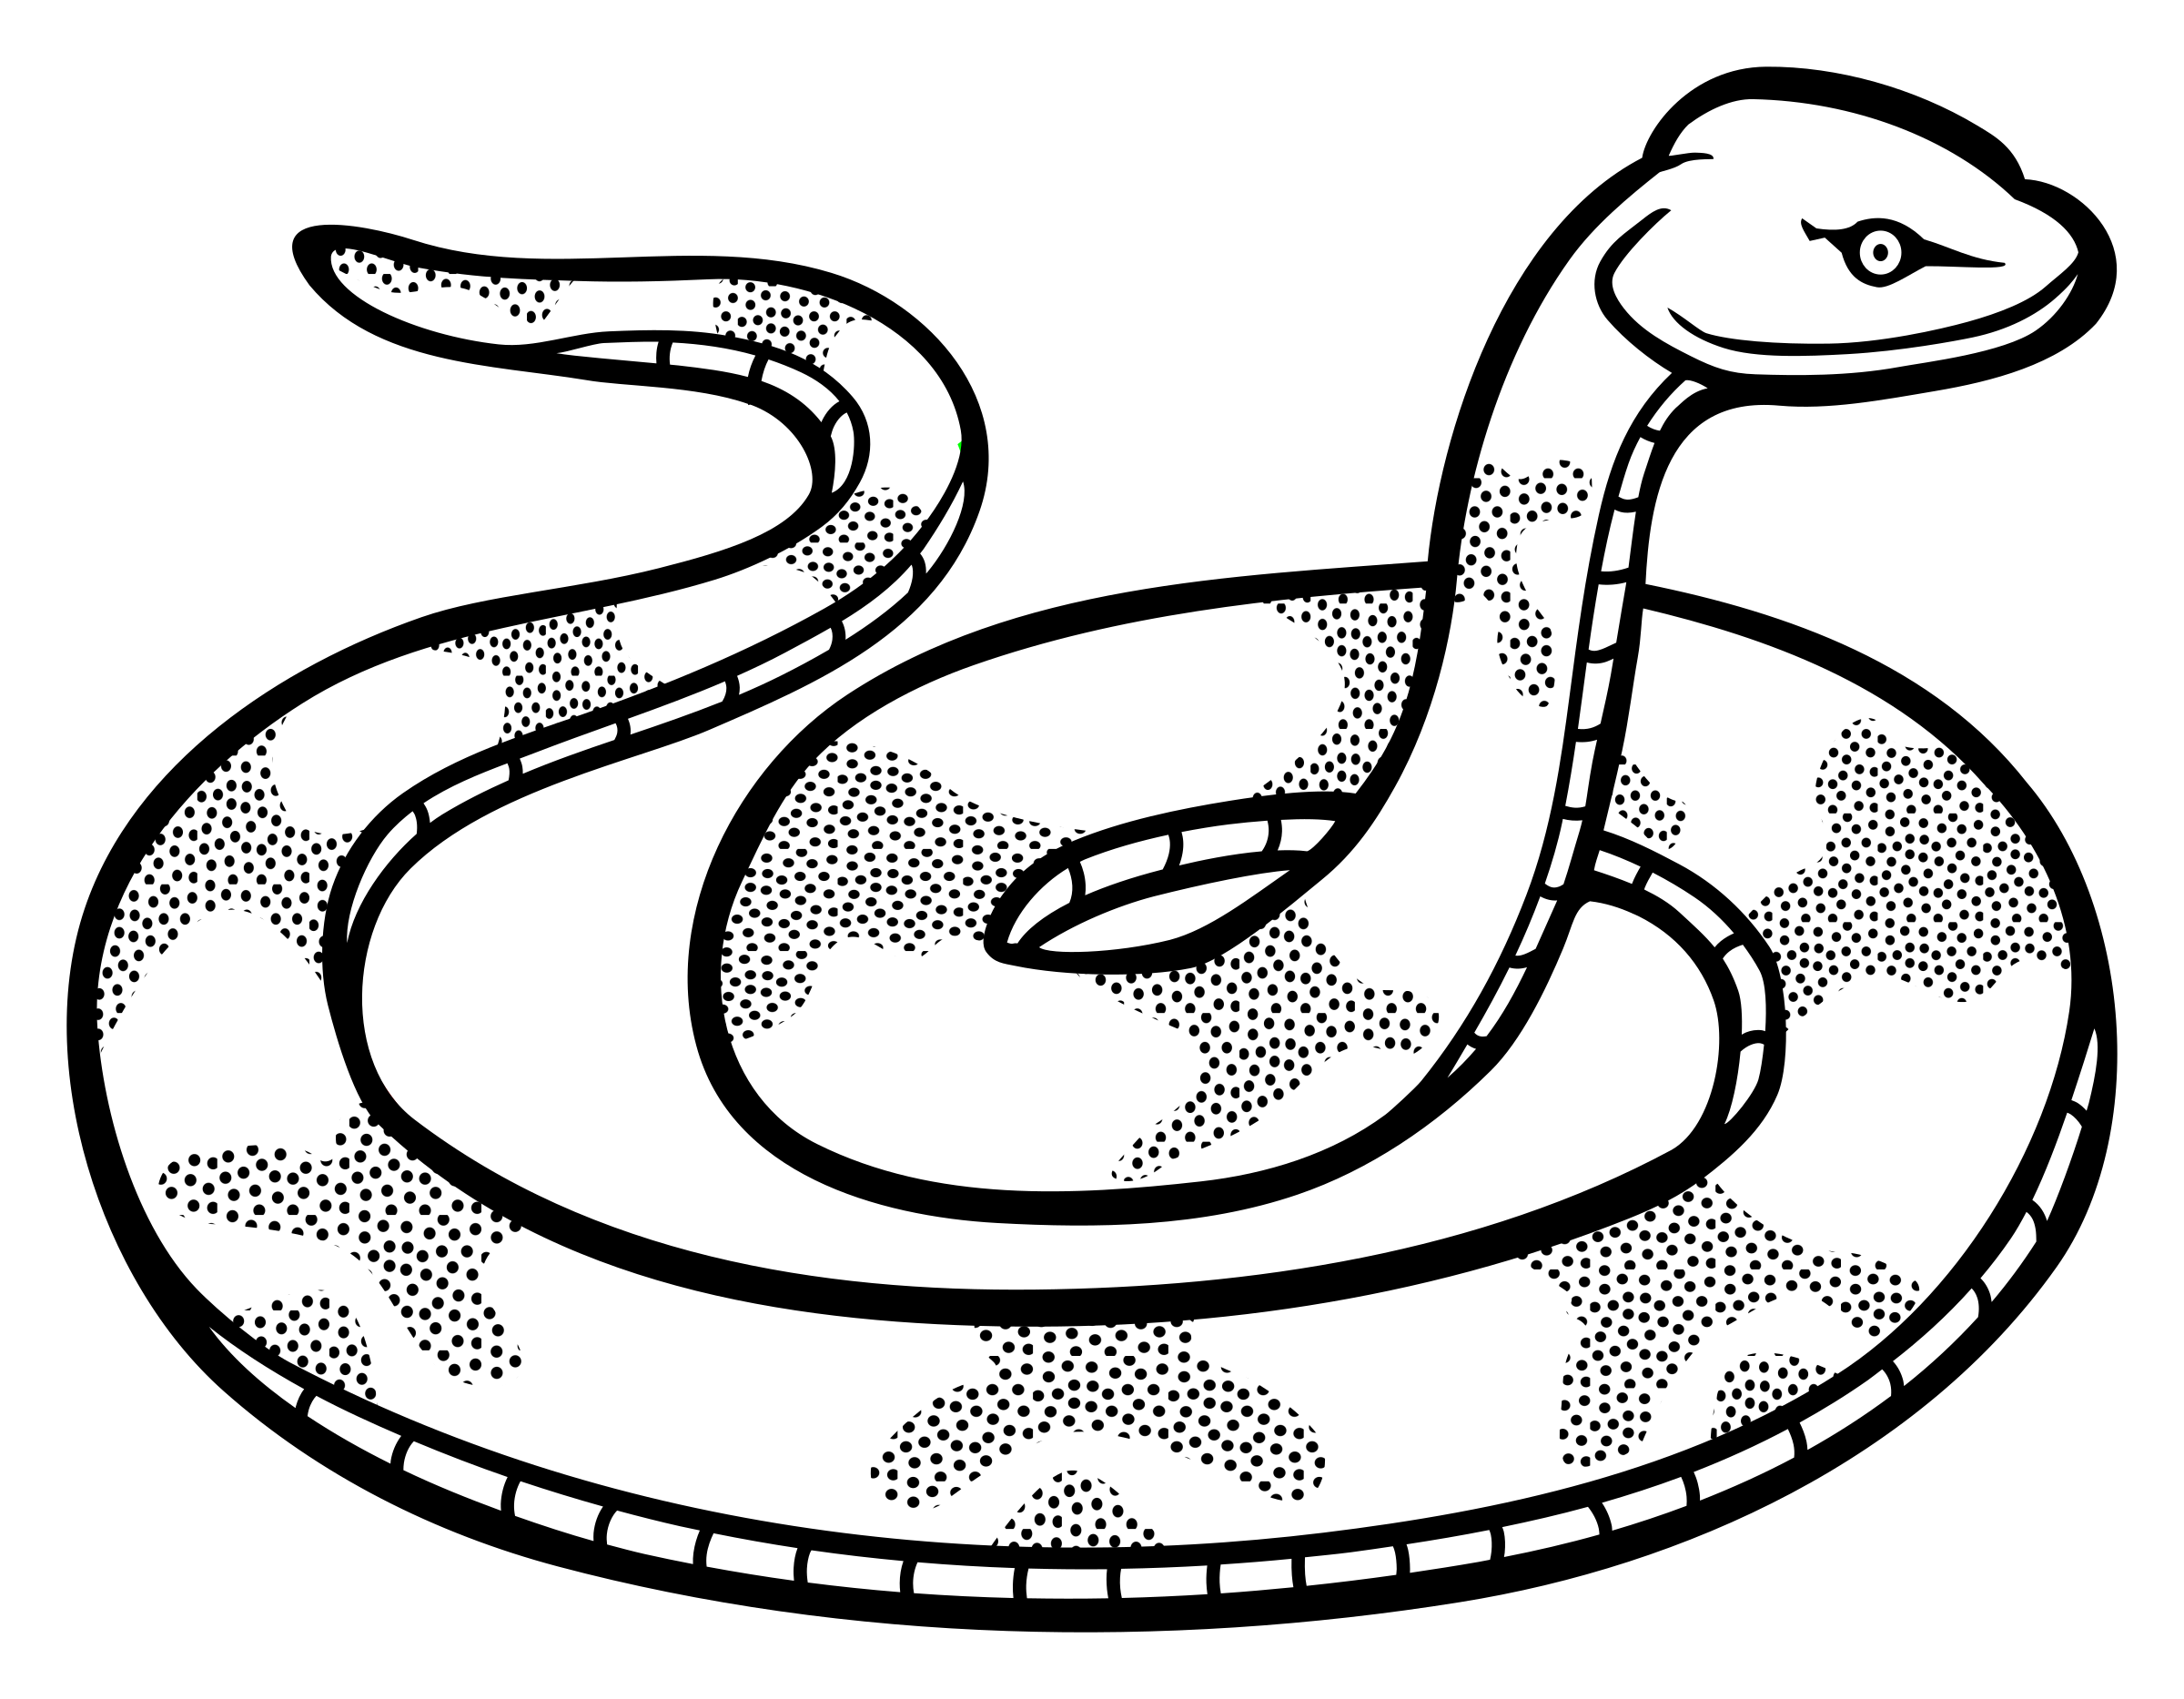 albino snake sketch